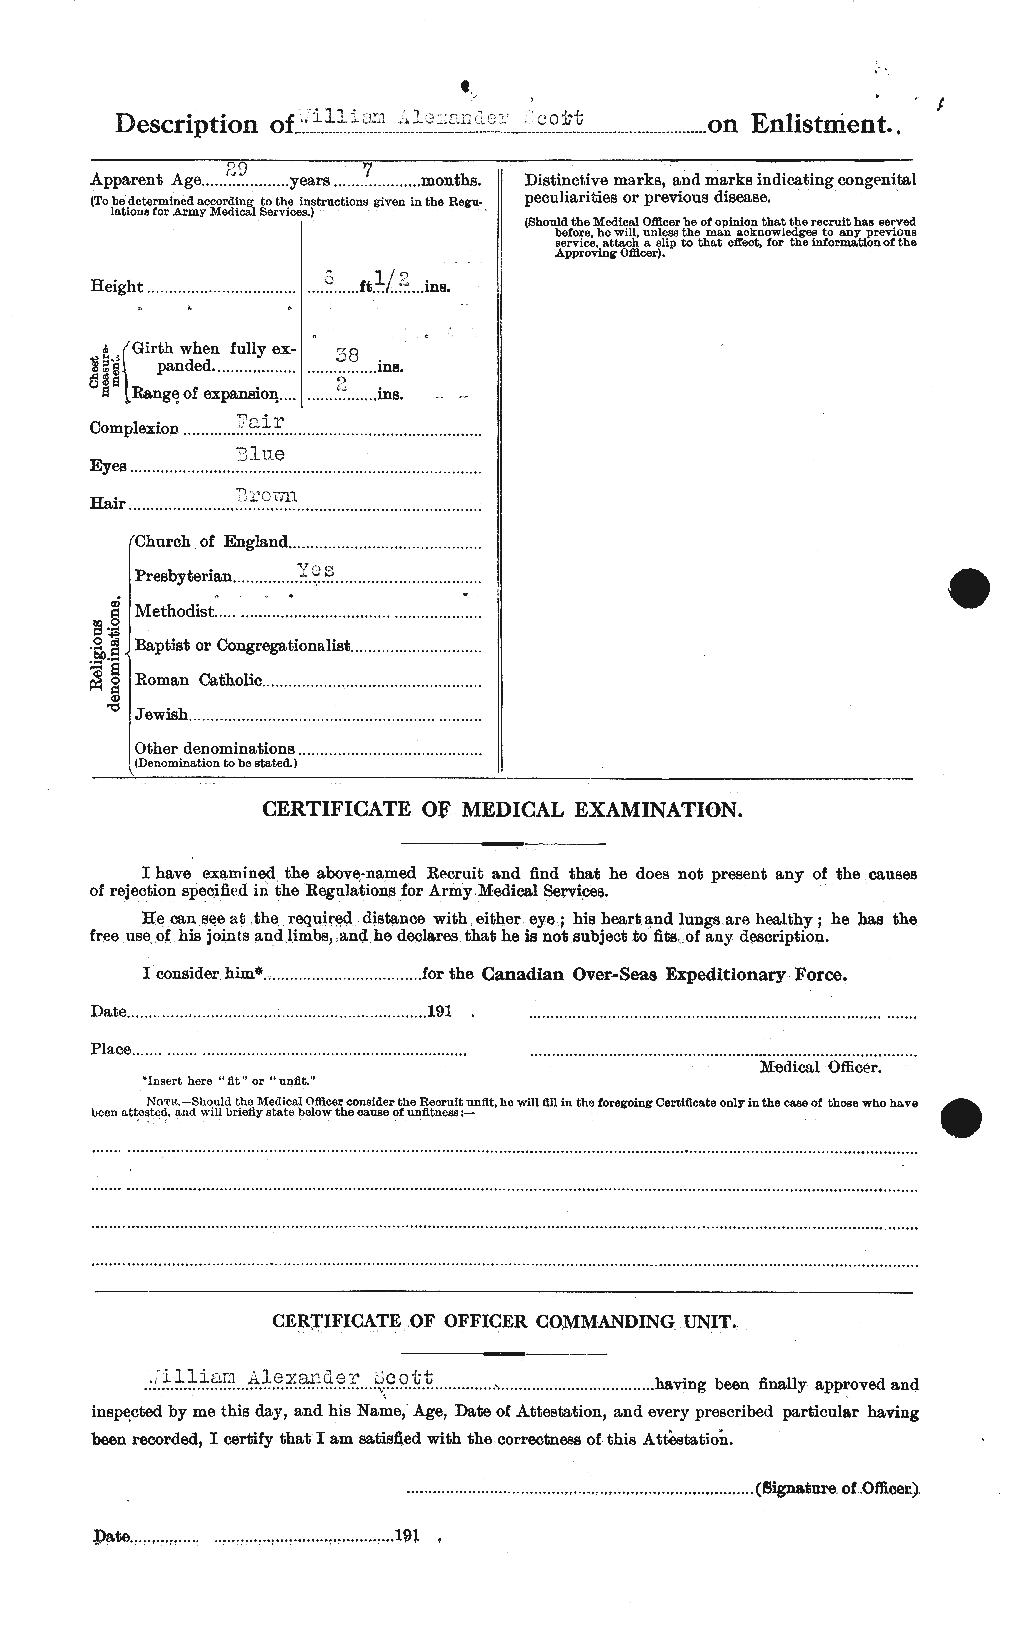 Dossiers du Personnel de la Première Guerre mondiale - CEC 087338b